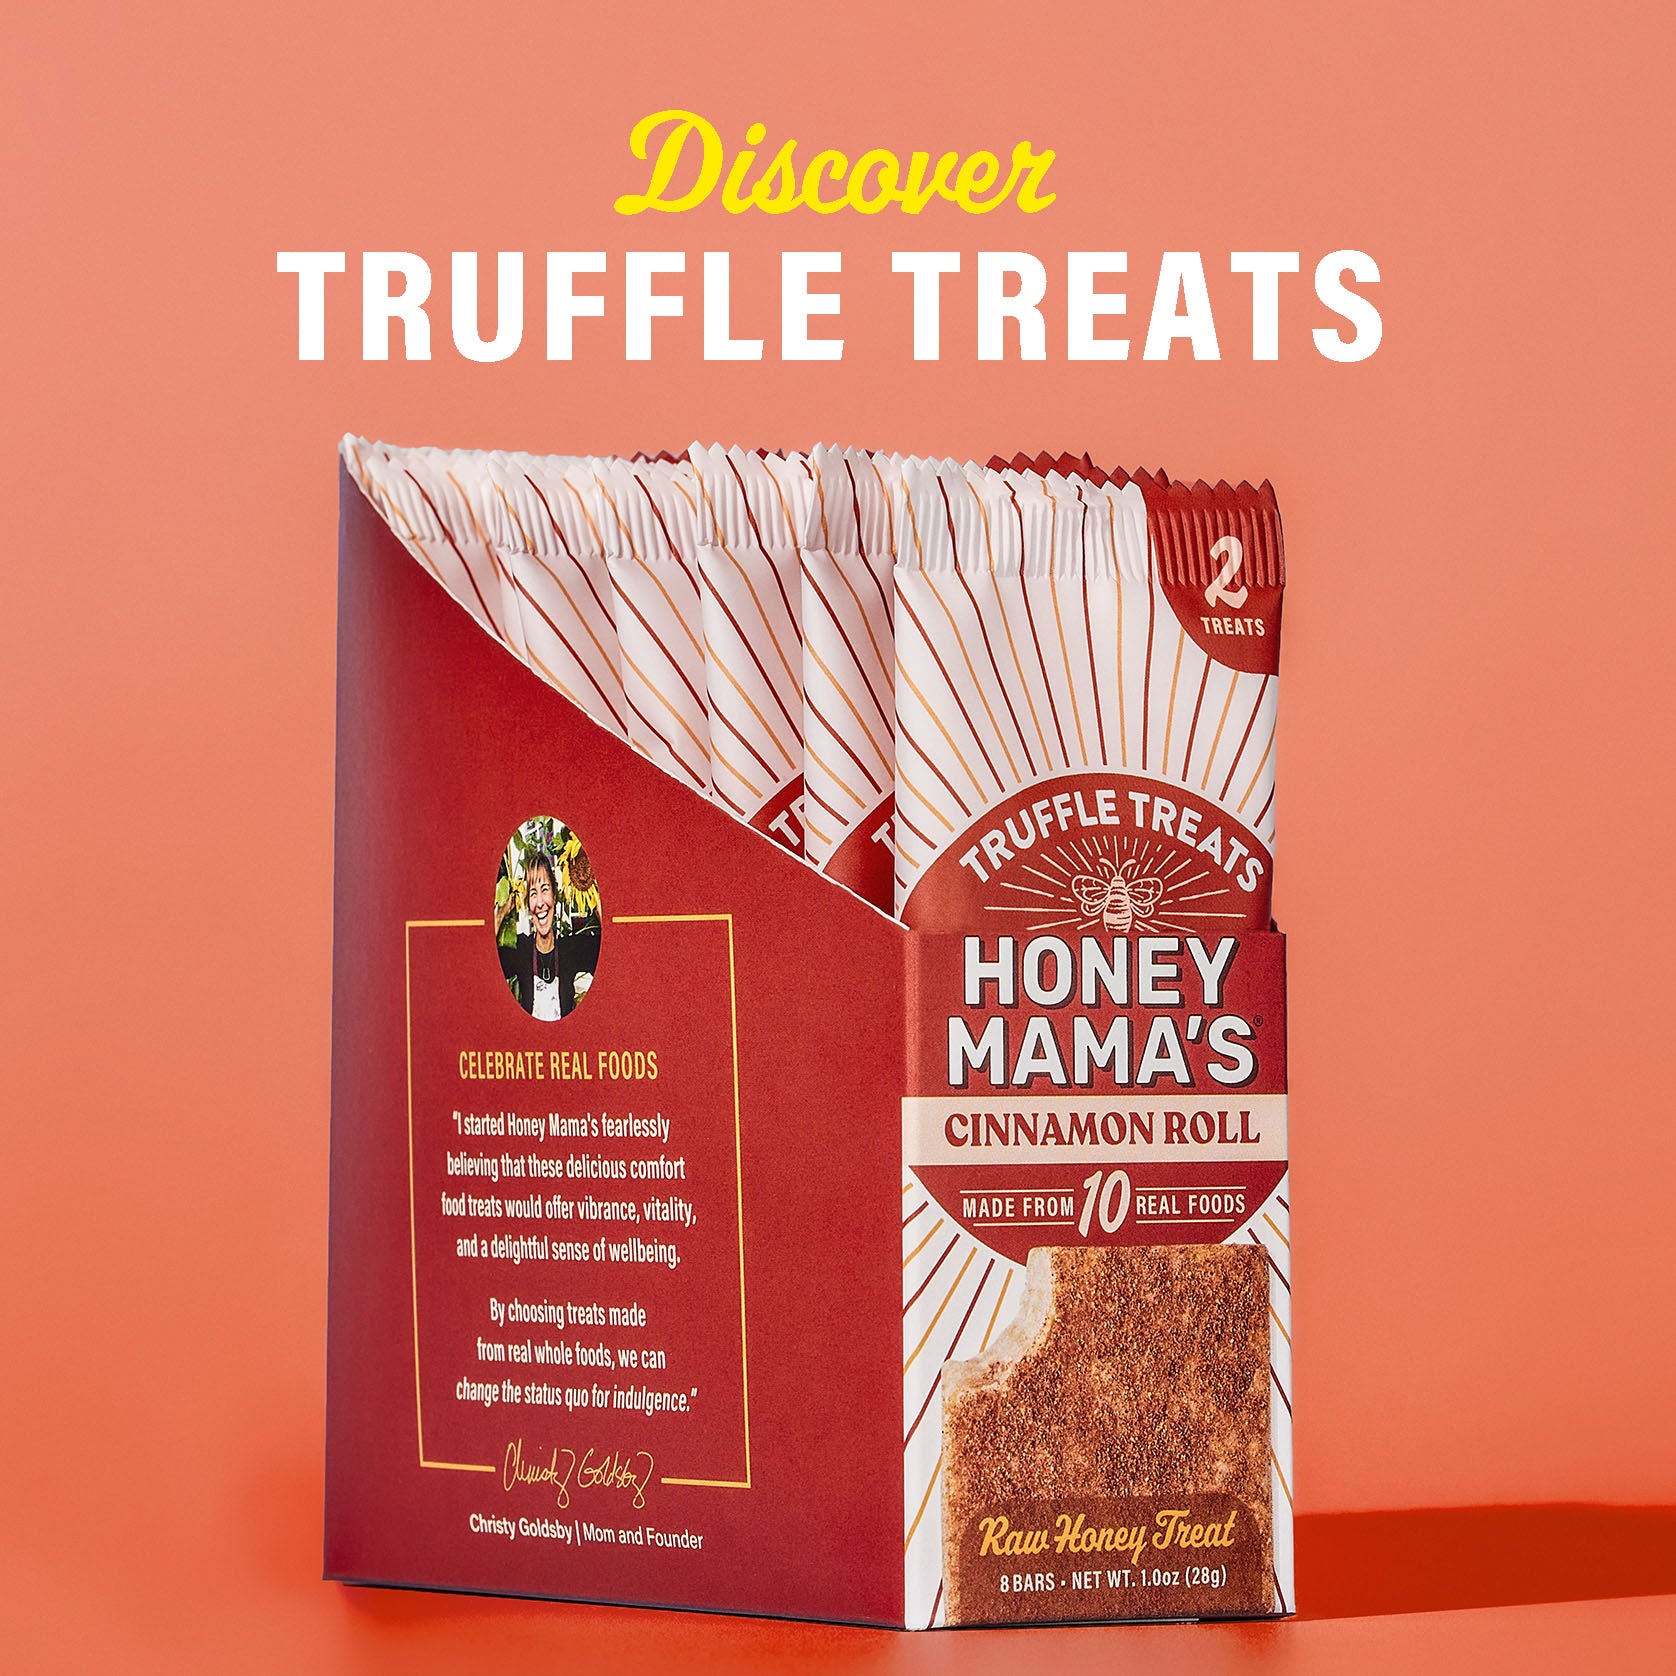 Cinnamon Roll Treats – Honey Mama's